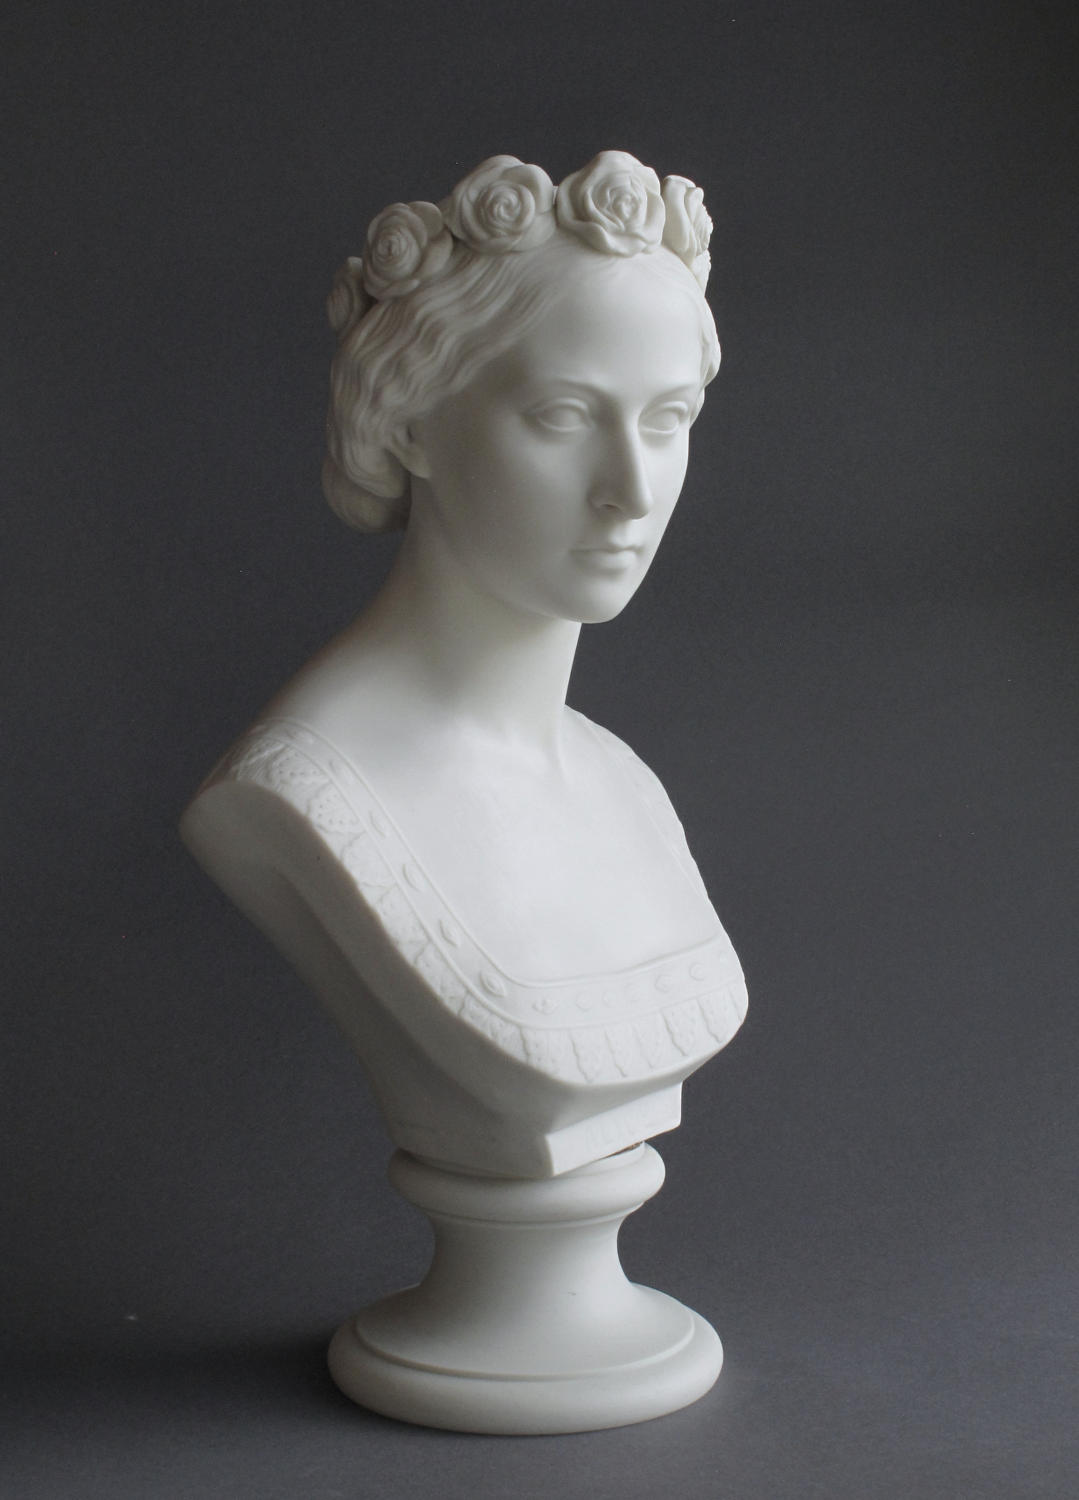 A rare Copeland Parian bust of Princess Alice